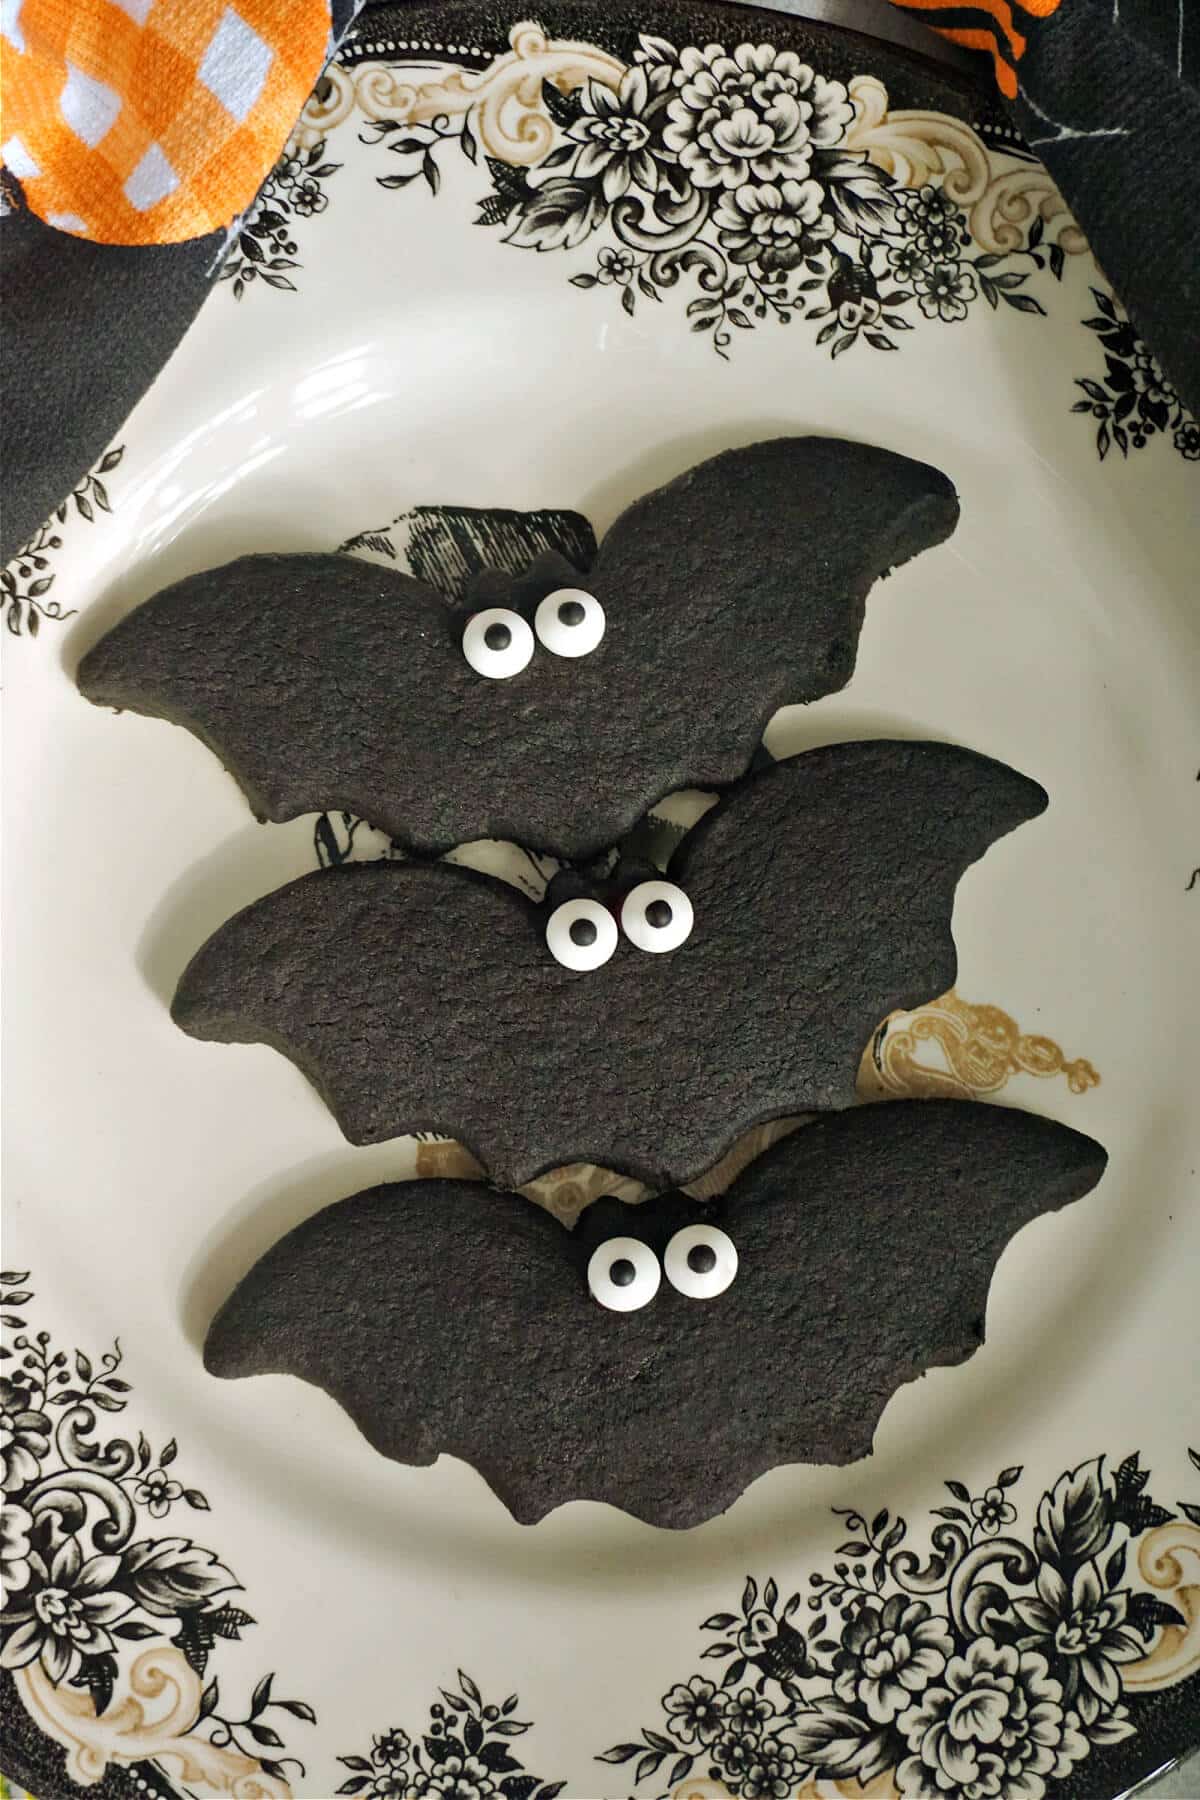 3 Halloween cookies in the shape of bats.